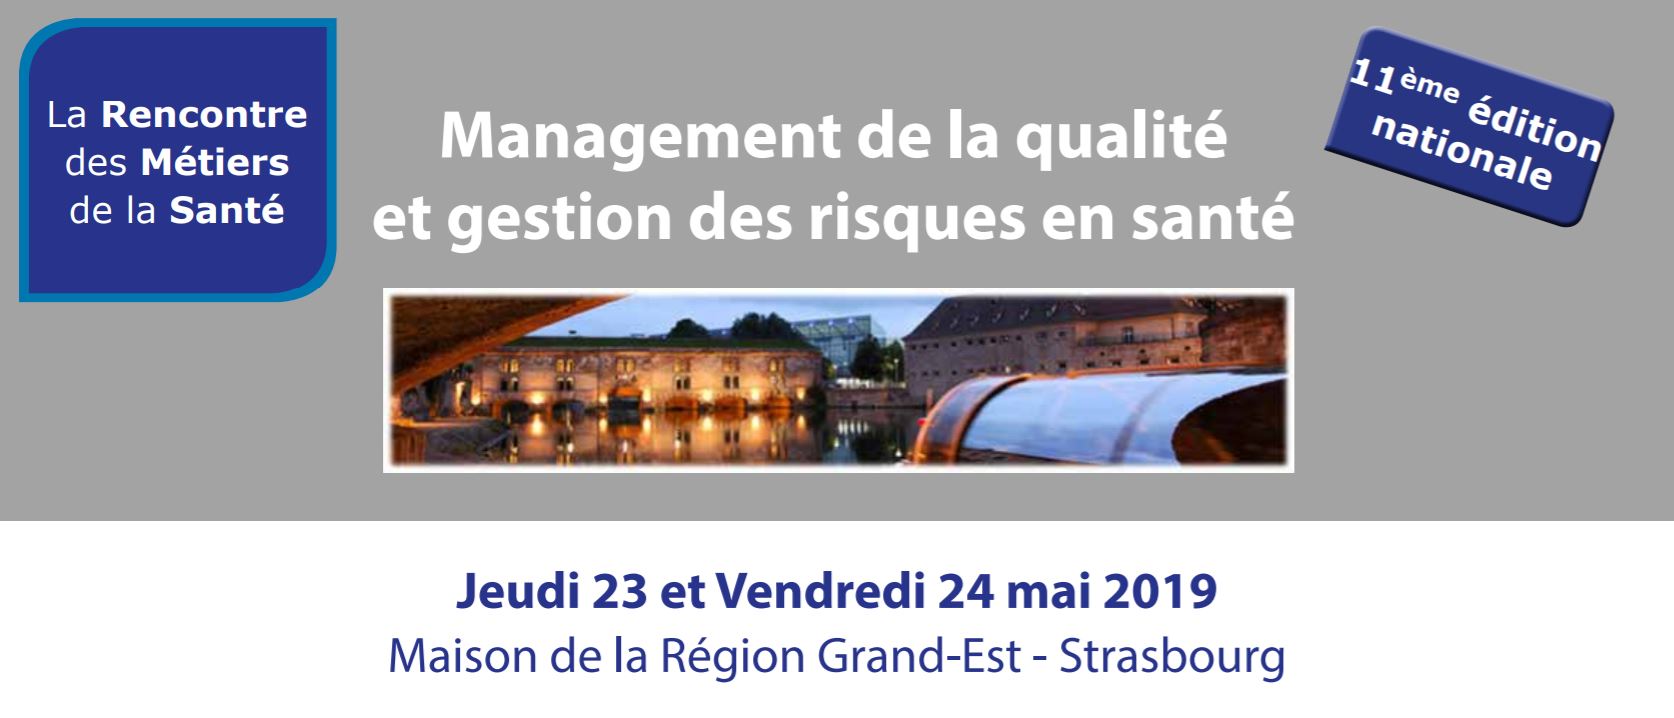 Management de la Qualité et de la gestion des risques en santé 23 et 24 Mai 2019